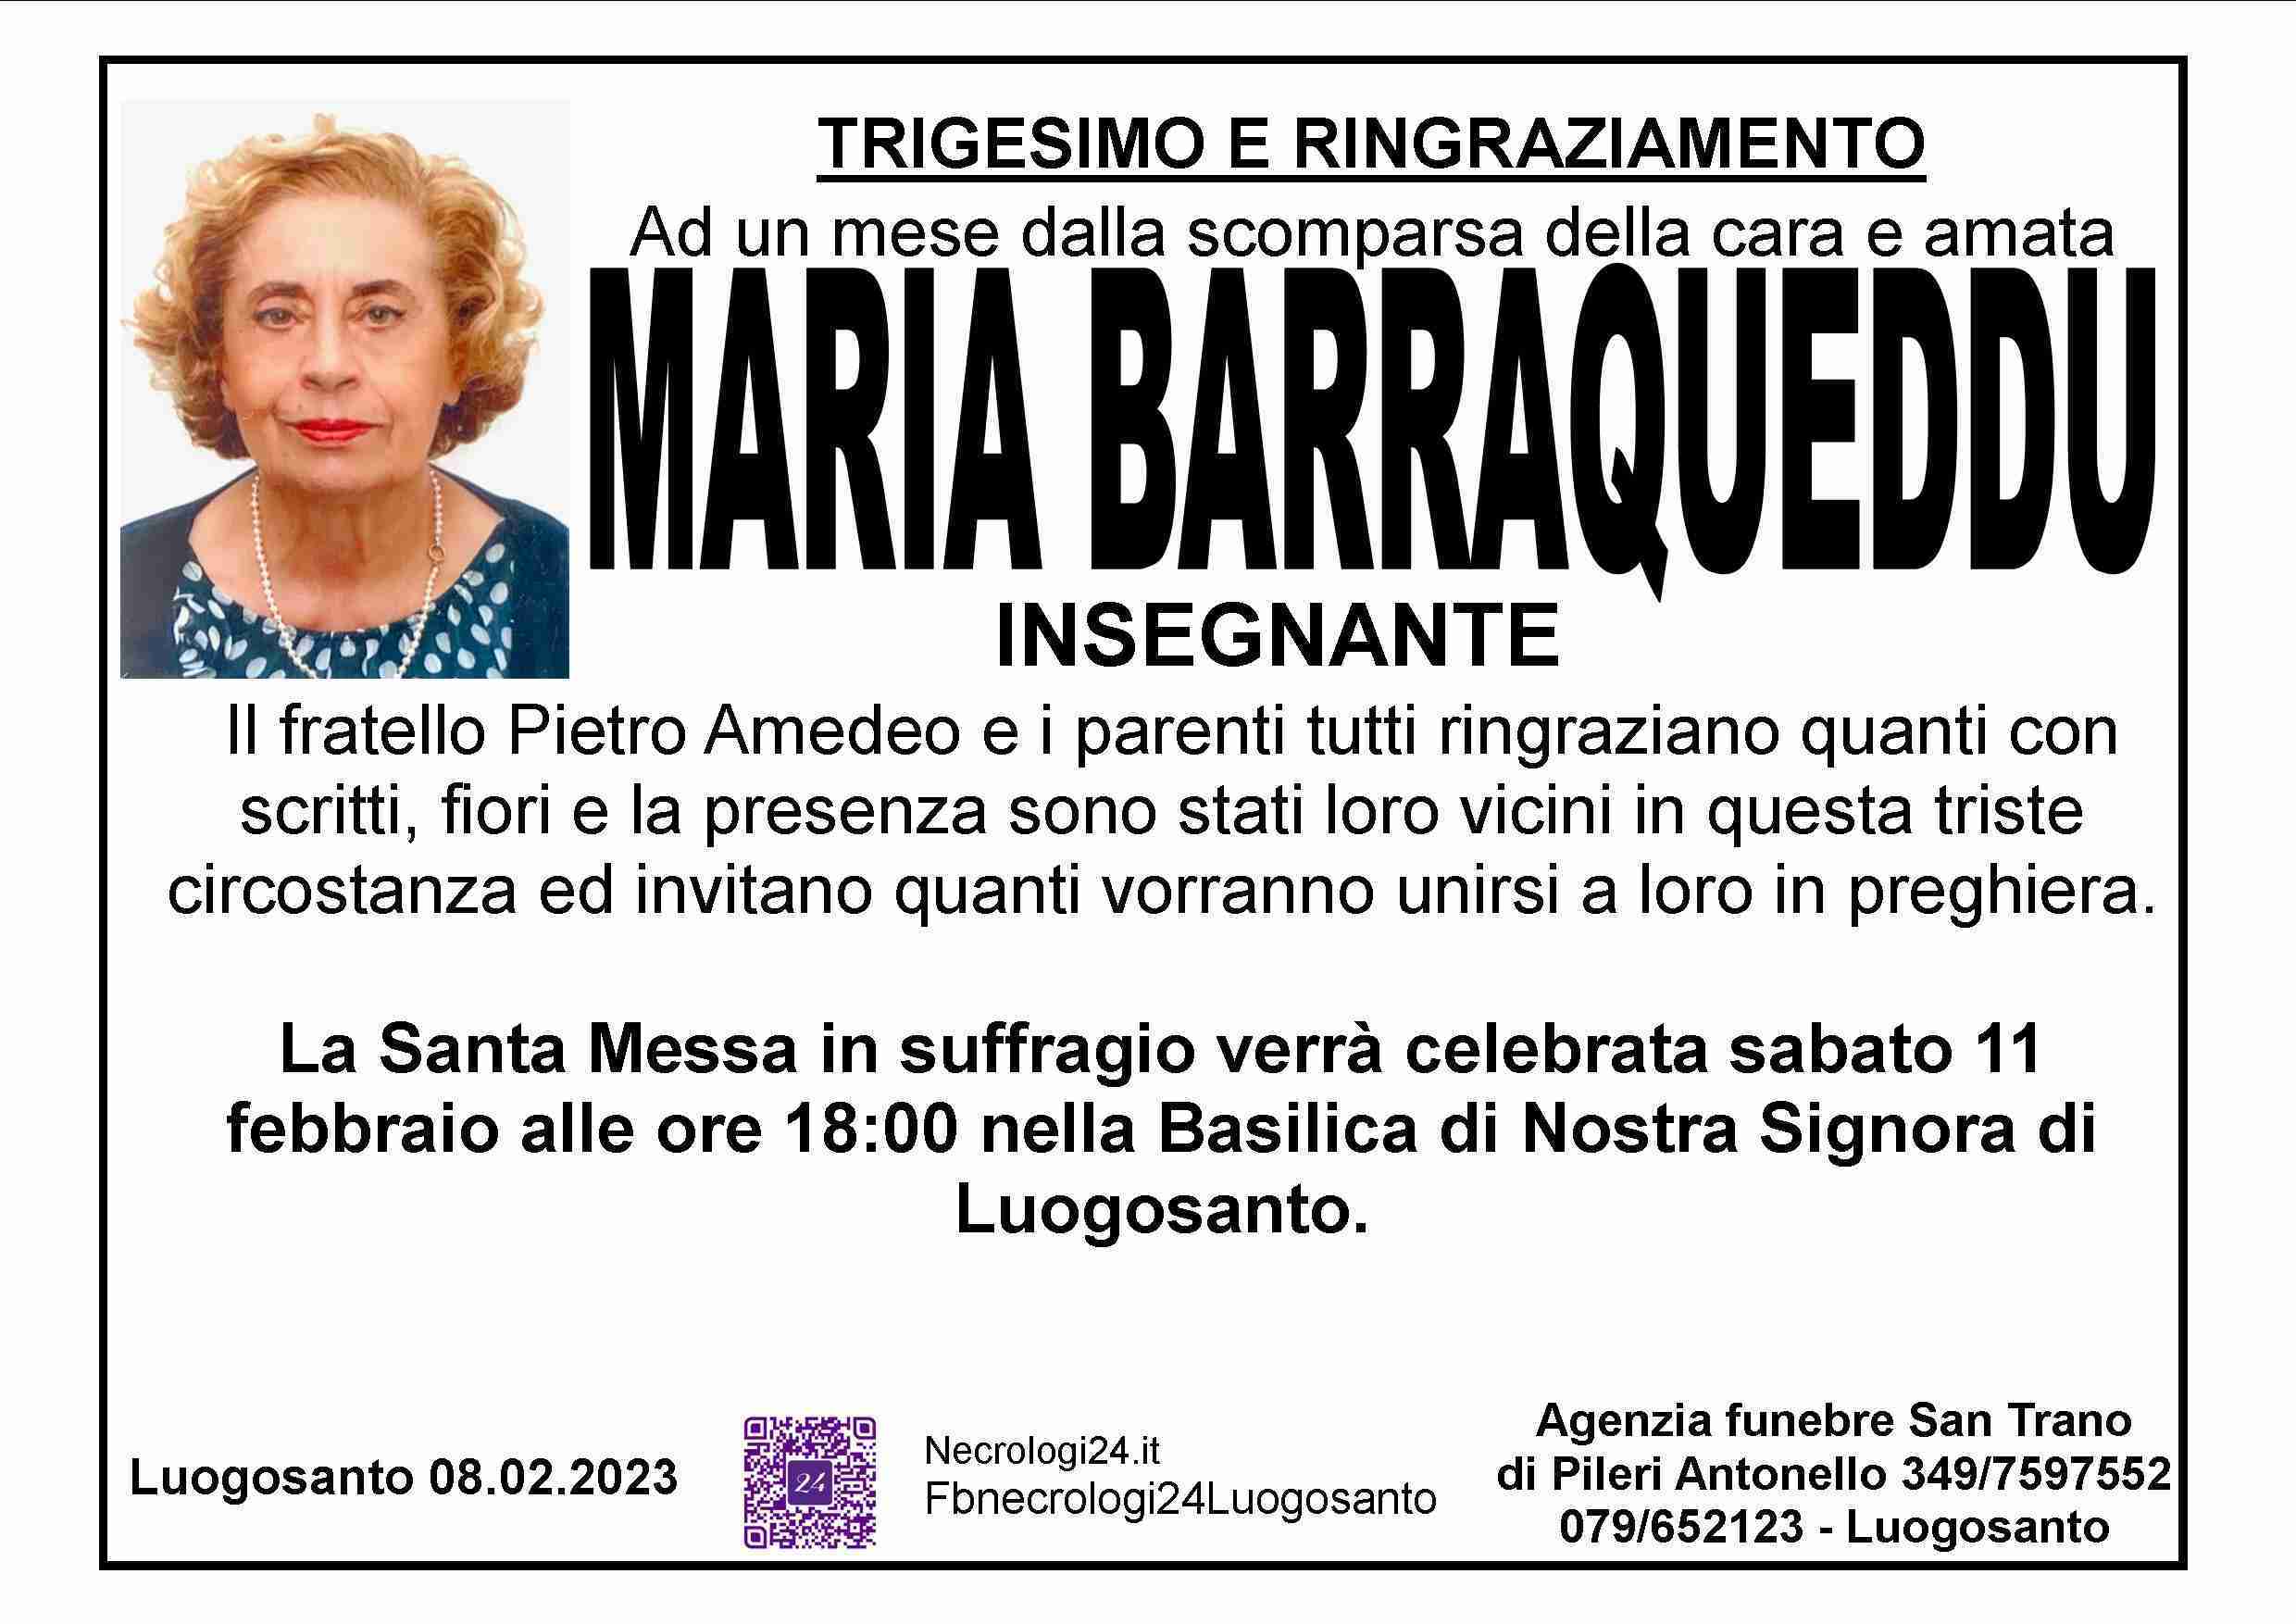 Maria Barraqueddu